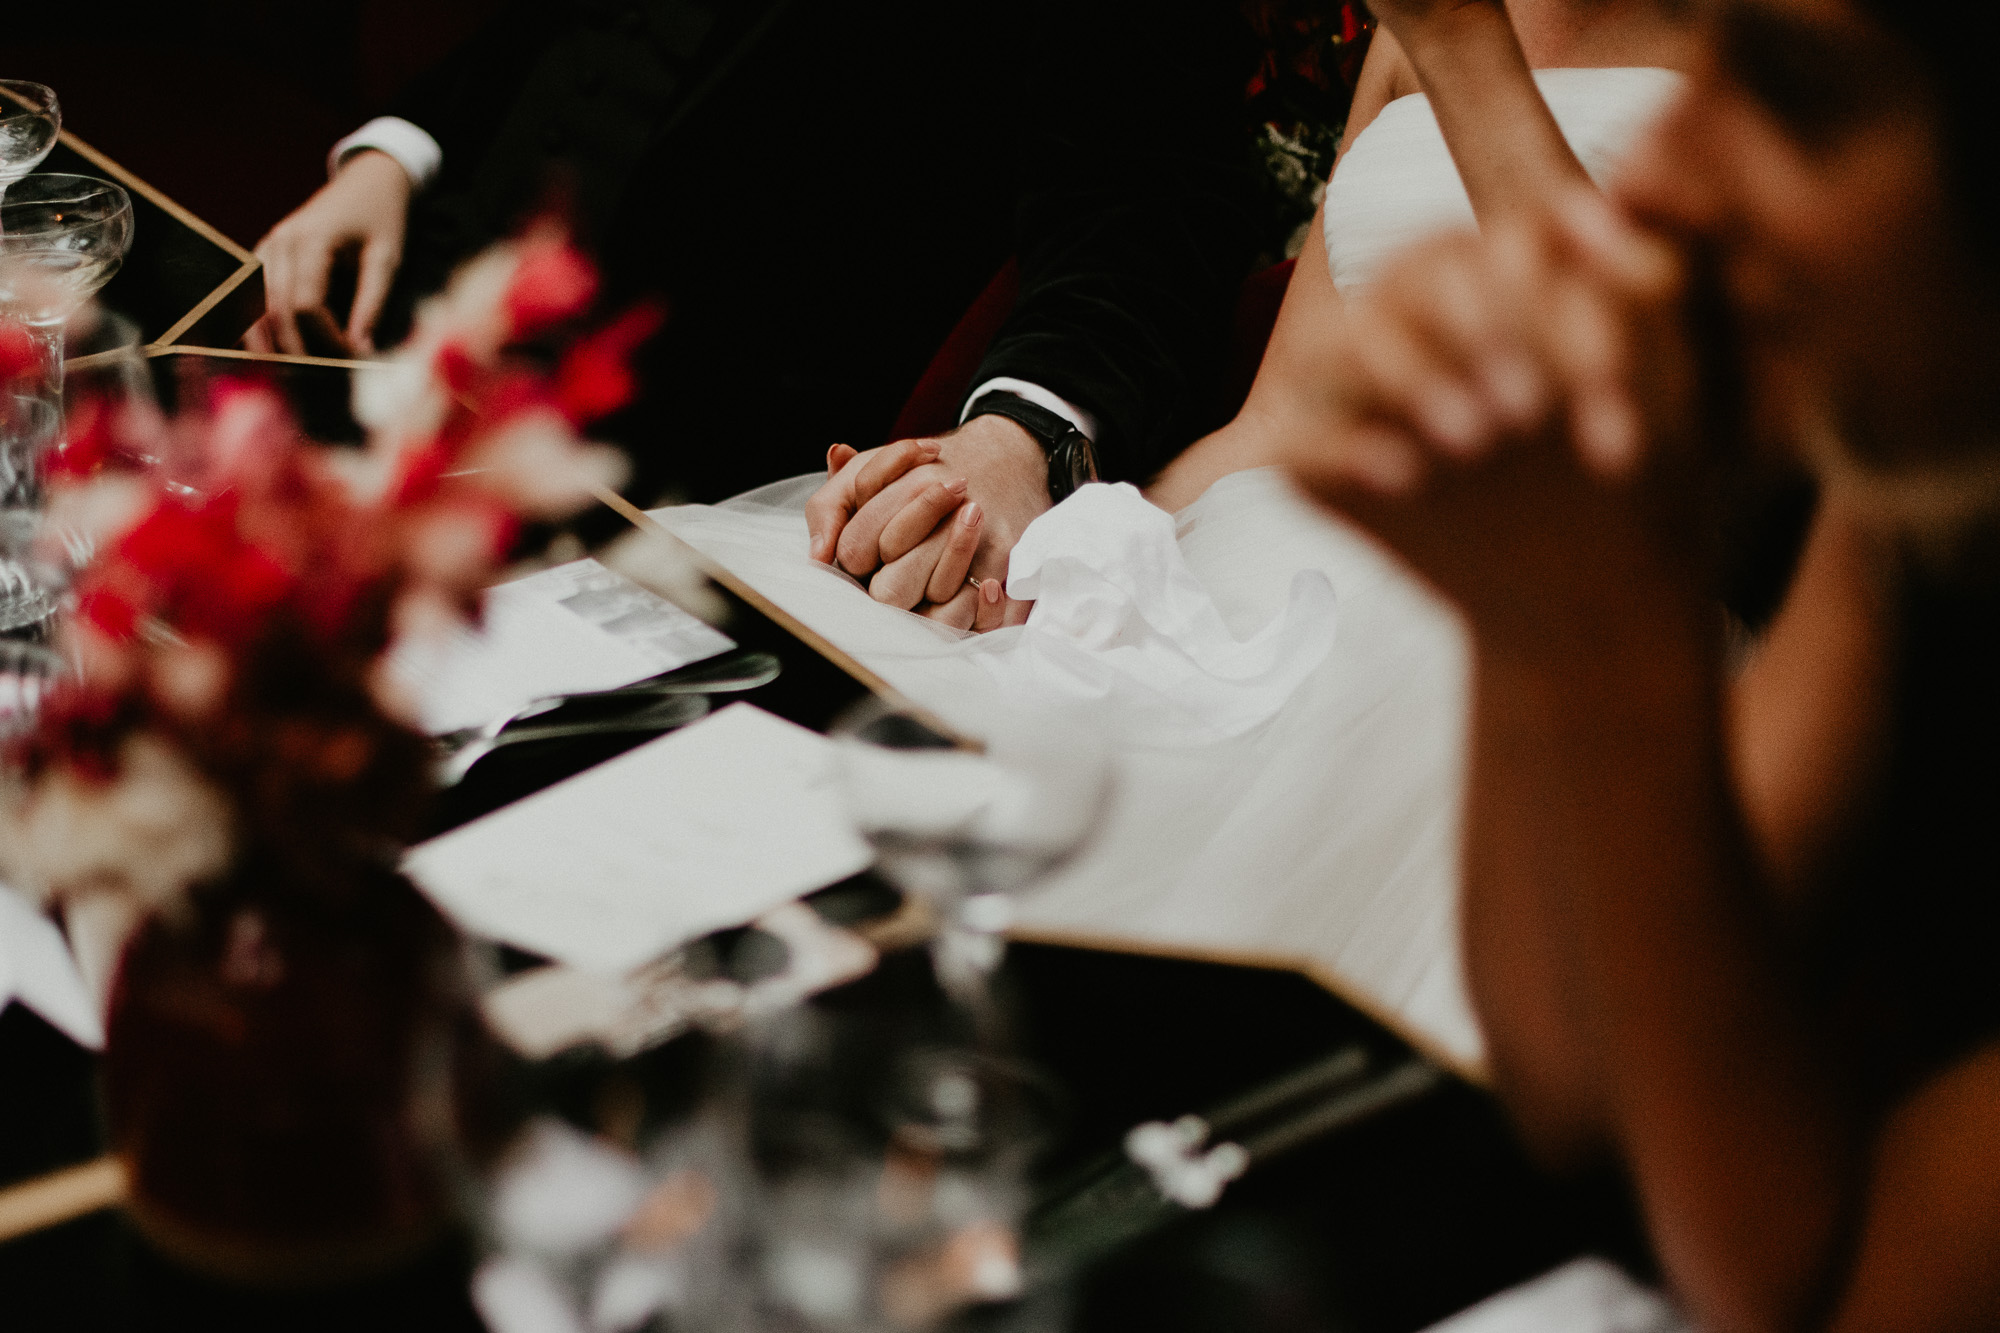 les mariés, attablés pour le diner, se tienne la main sous la table